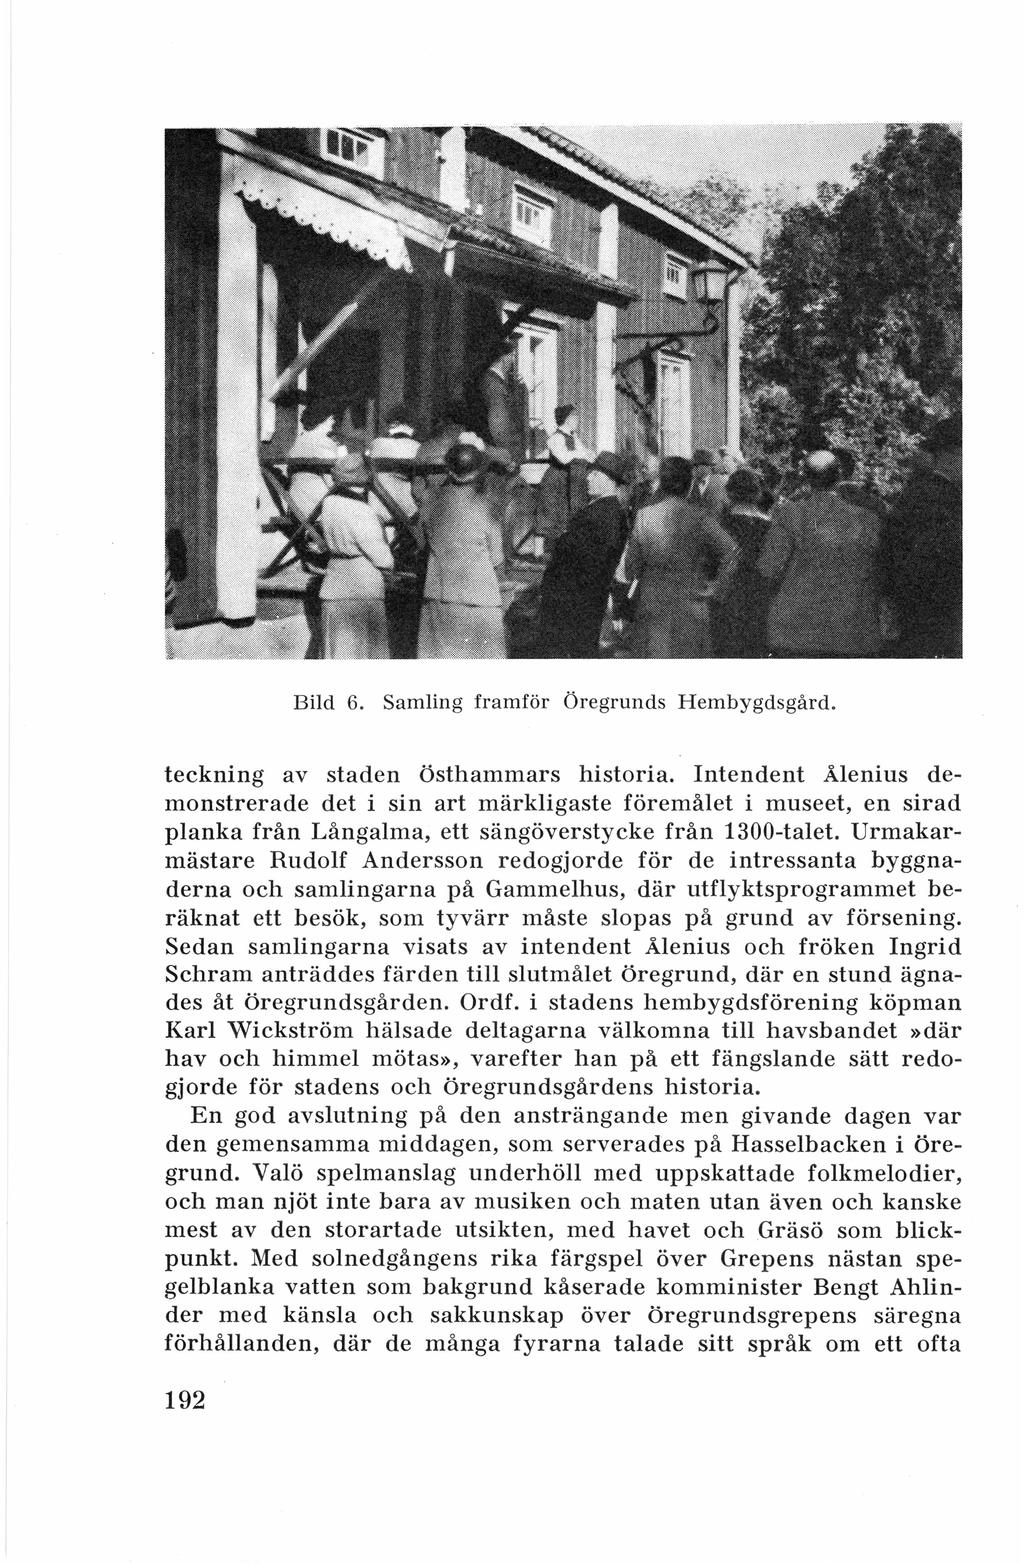 Bild 6. Samling framför Öregrunds Hembygdsgård. teckning av staden Östhammars historia.